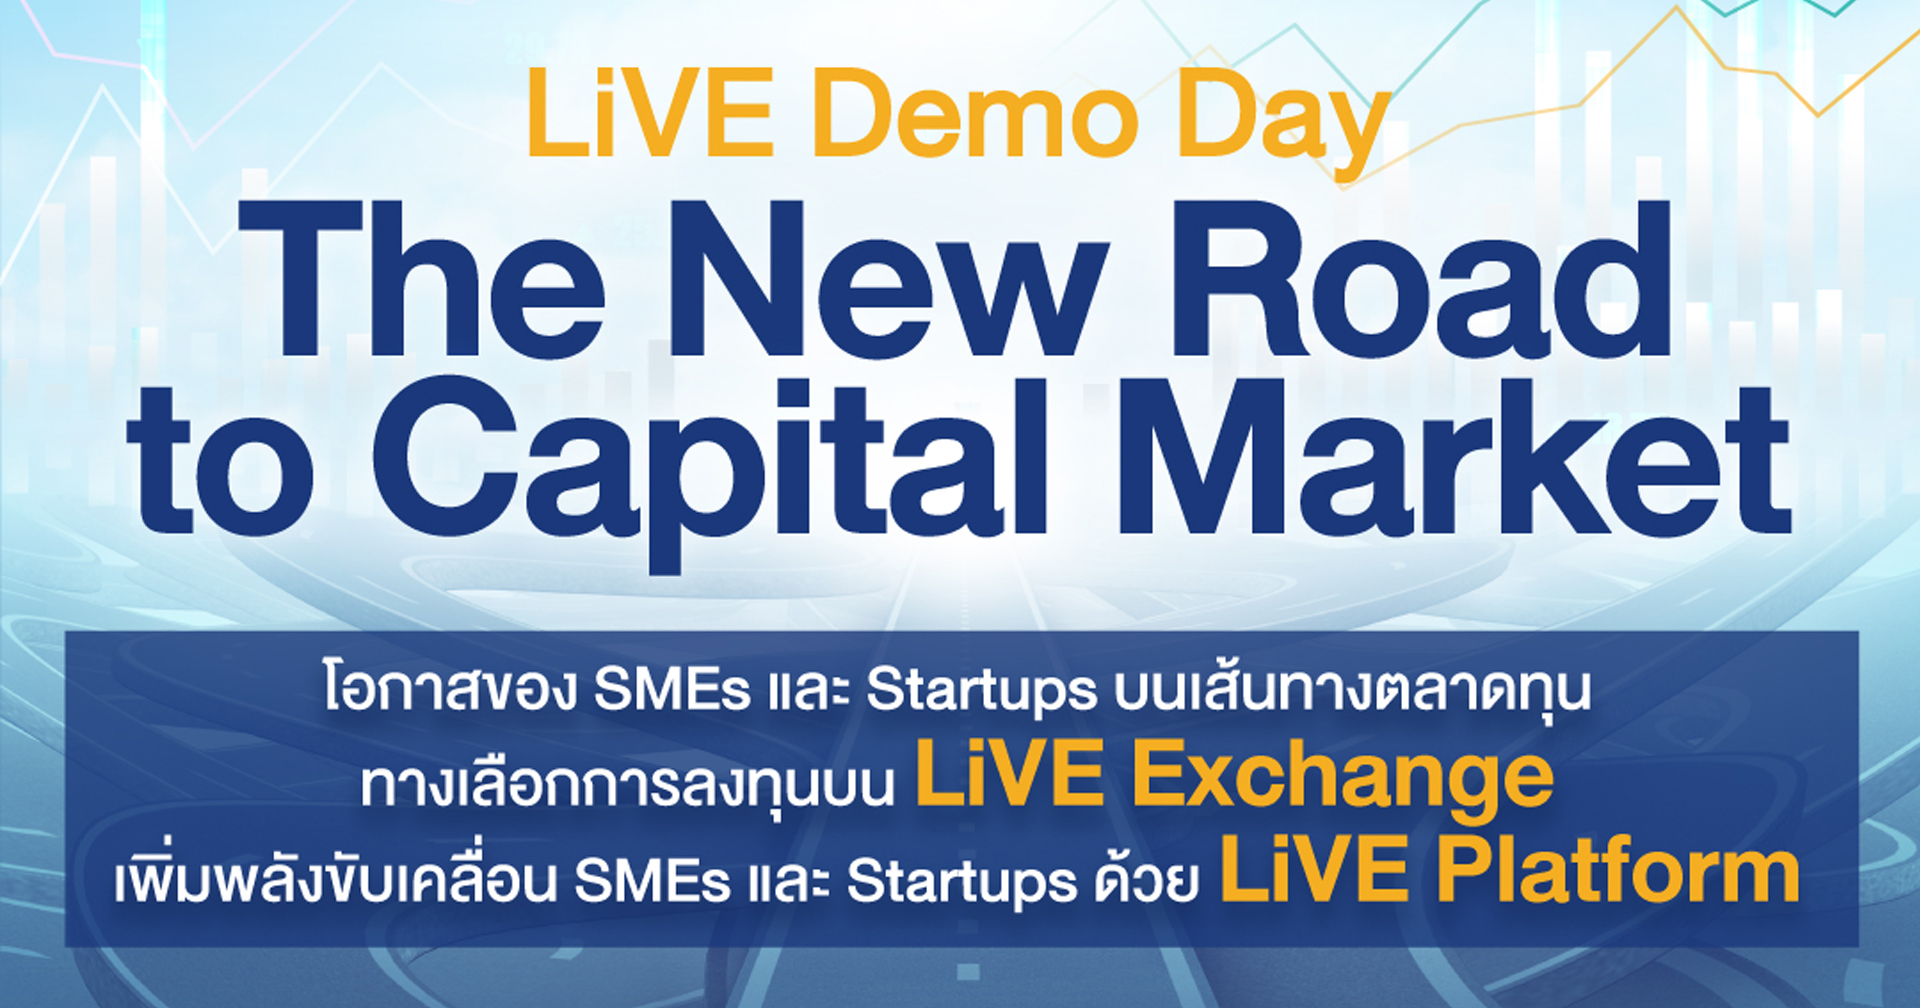 พบกับโอกาสของ SMEs และ Startups บนเส้นทางตลาดทุน ในงาน LiVE Demo Day: The New Road to Capital Market